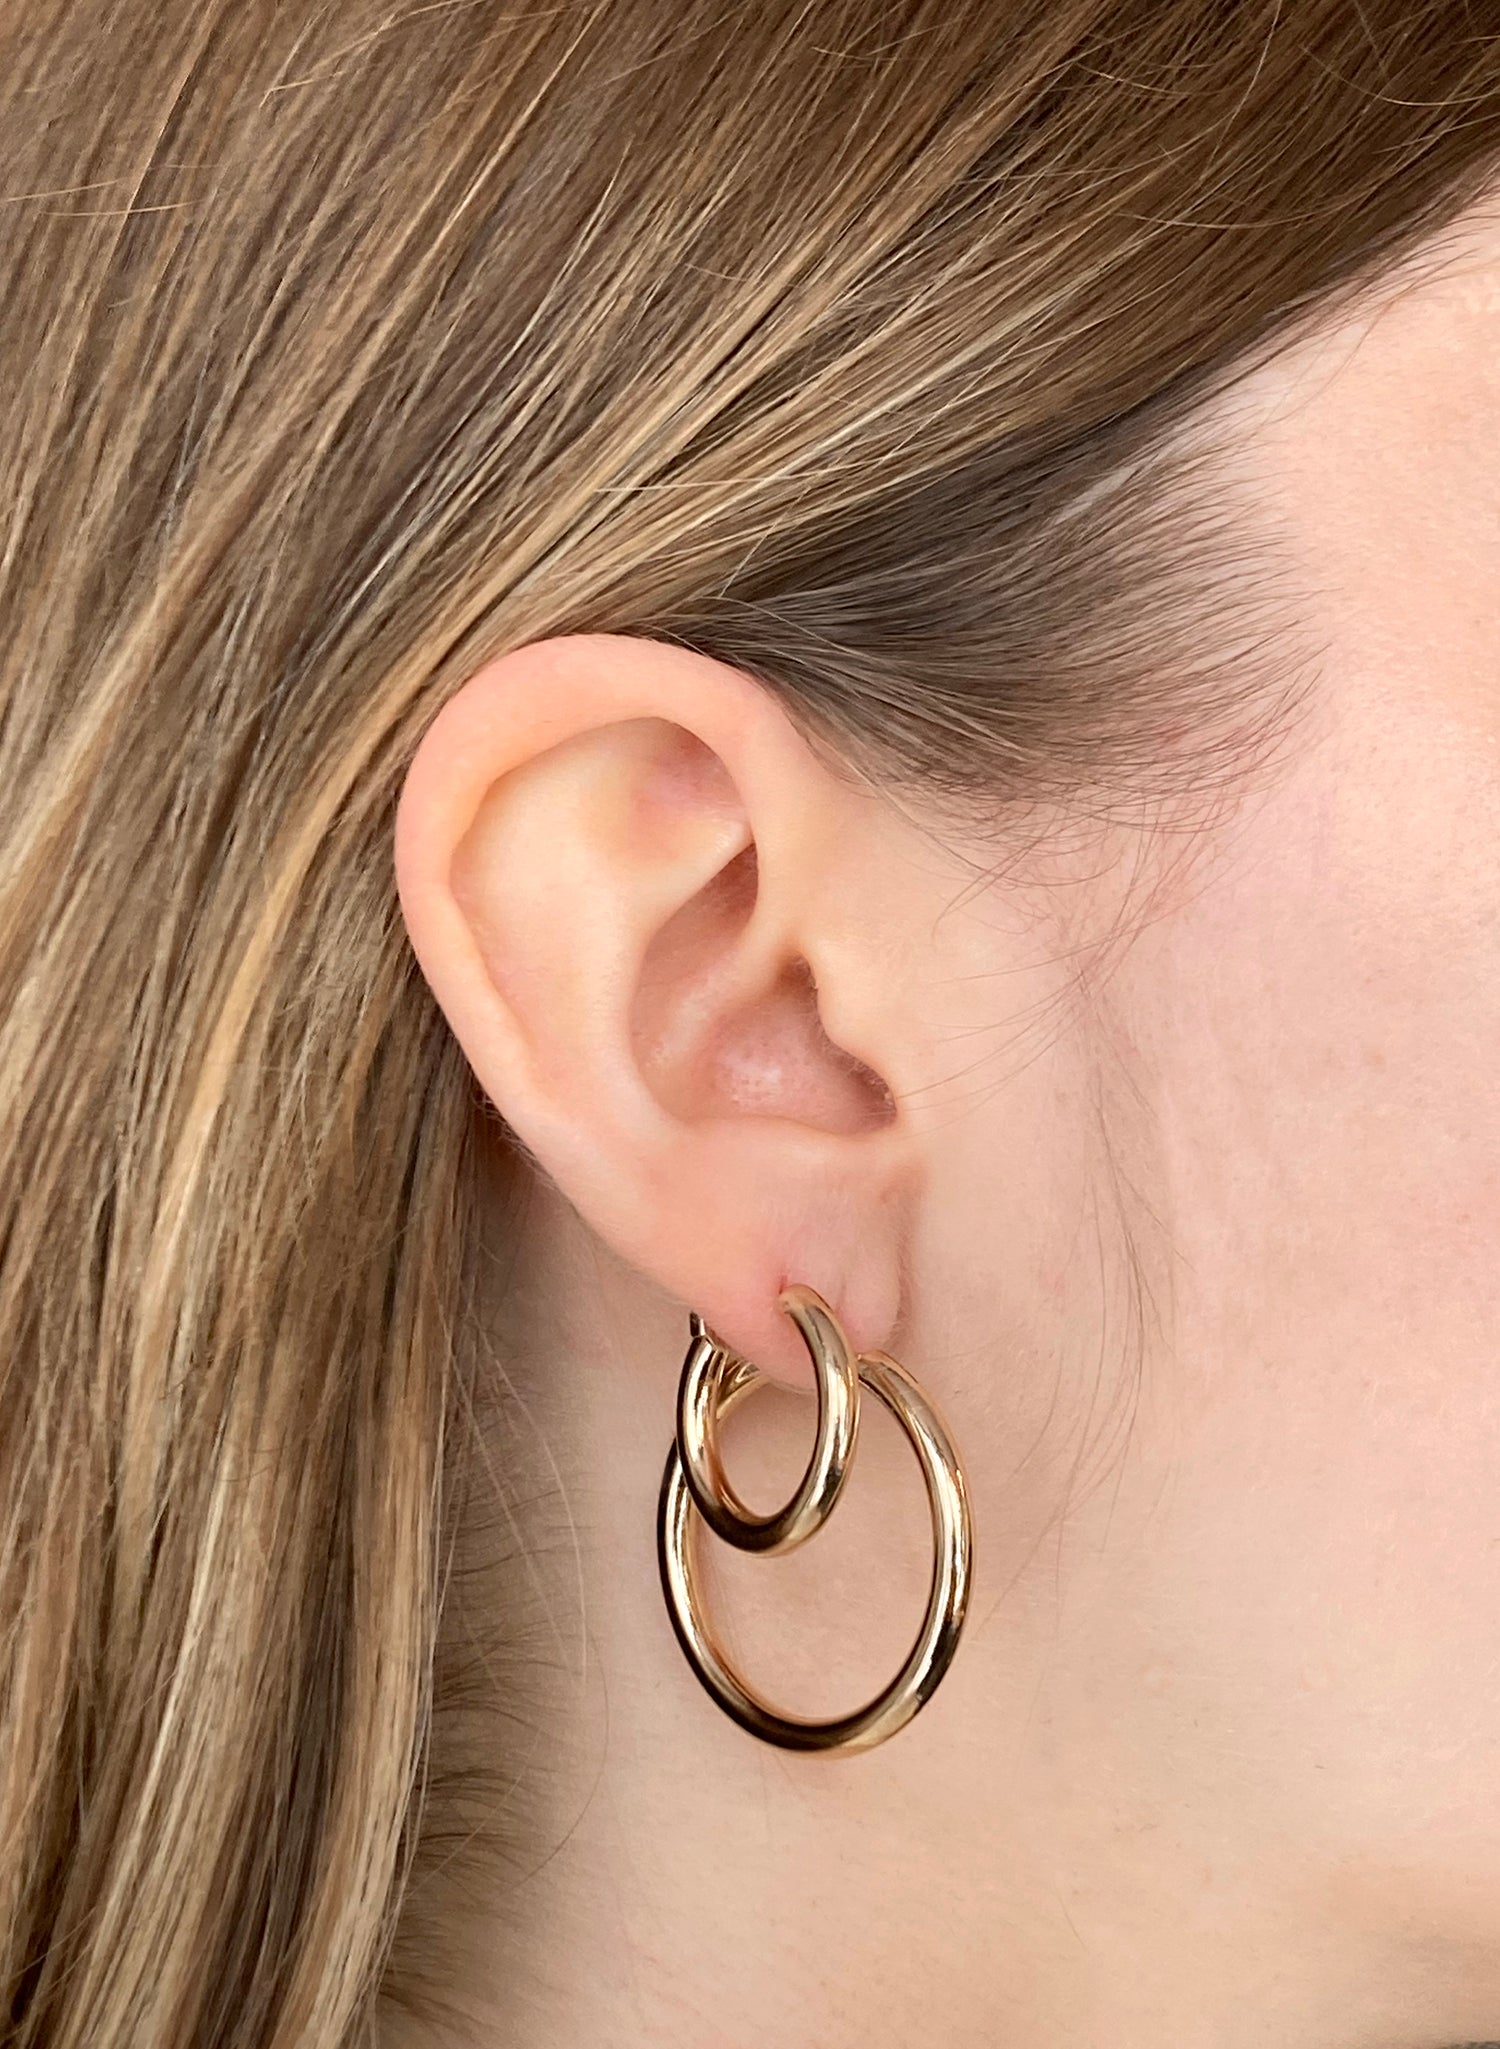 llayers-mens-women-gold-hoop-earrings-minimal-designer-jewelry-in-brookyn-new-york-hoop002-1